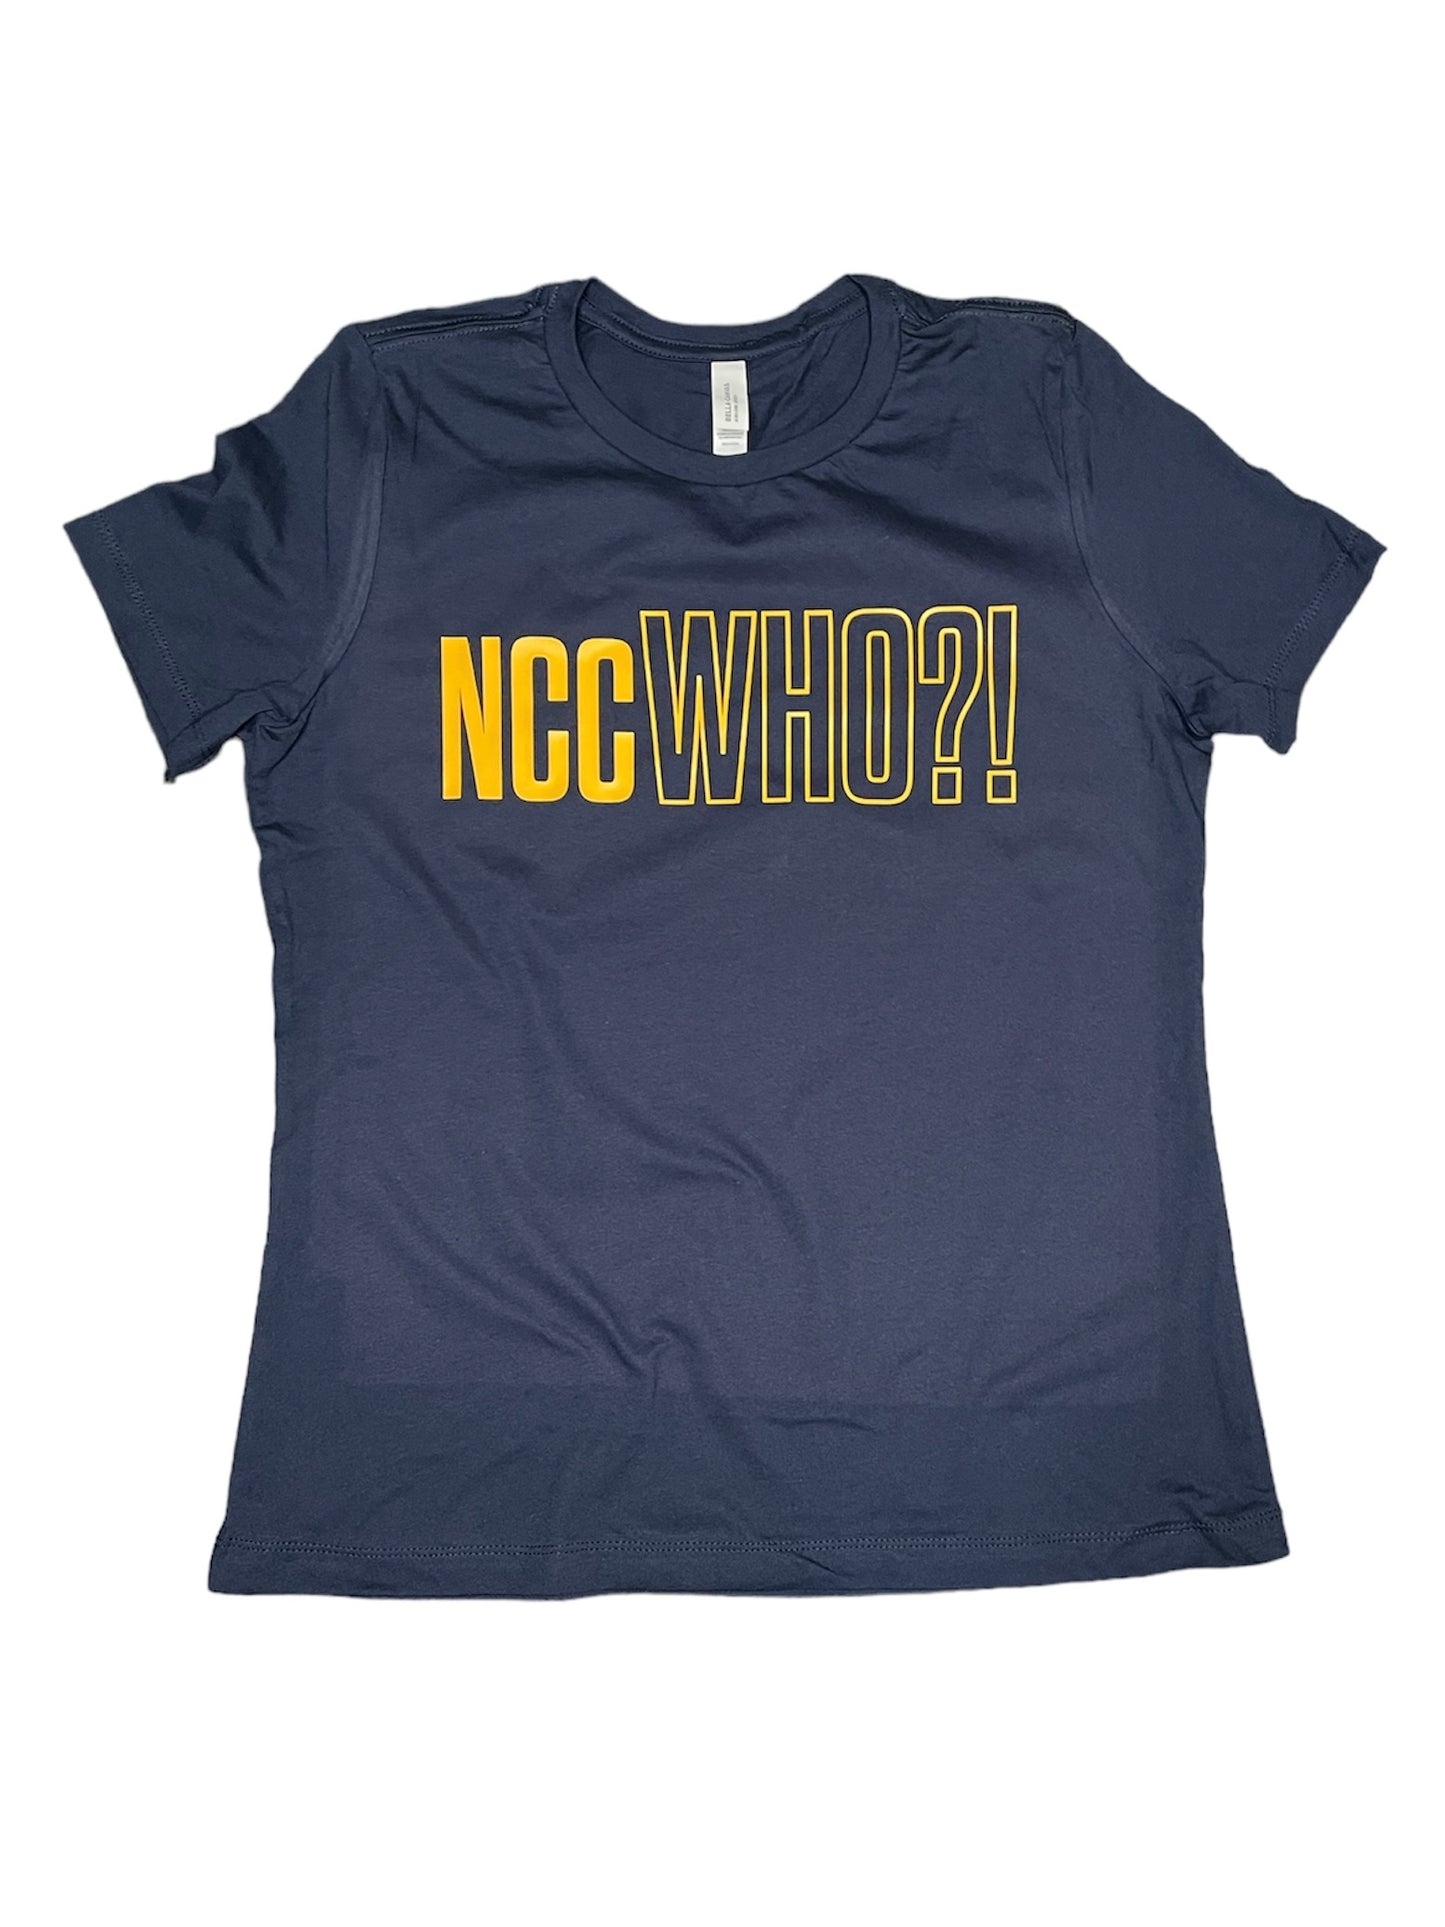 NCC WHO?! Tshirt